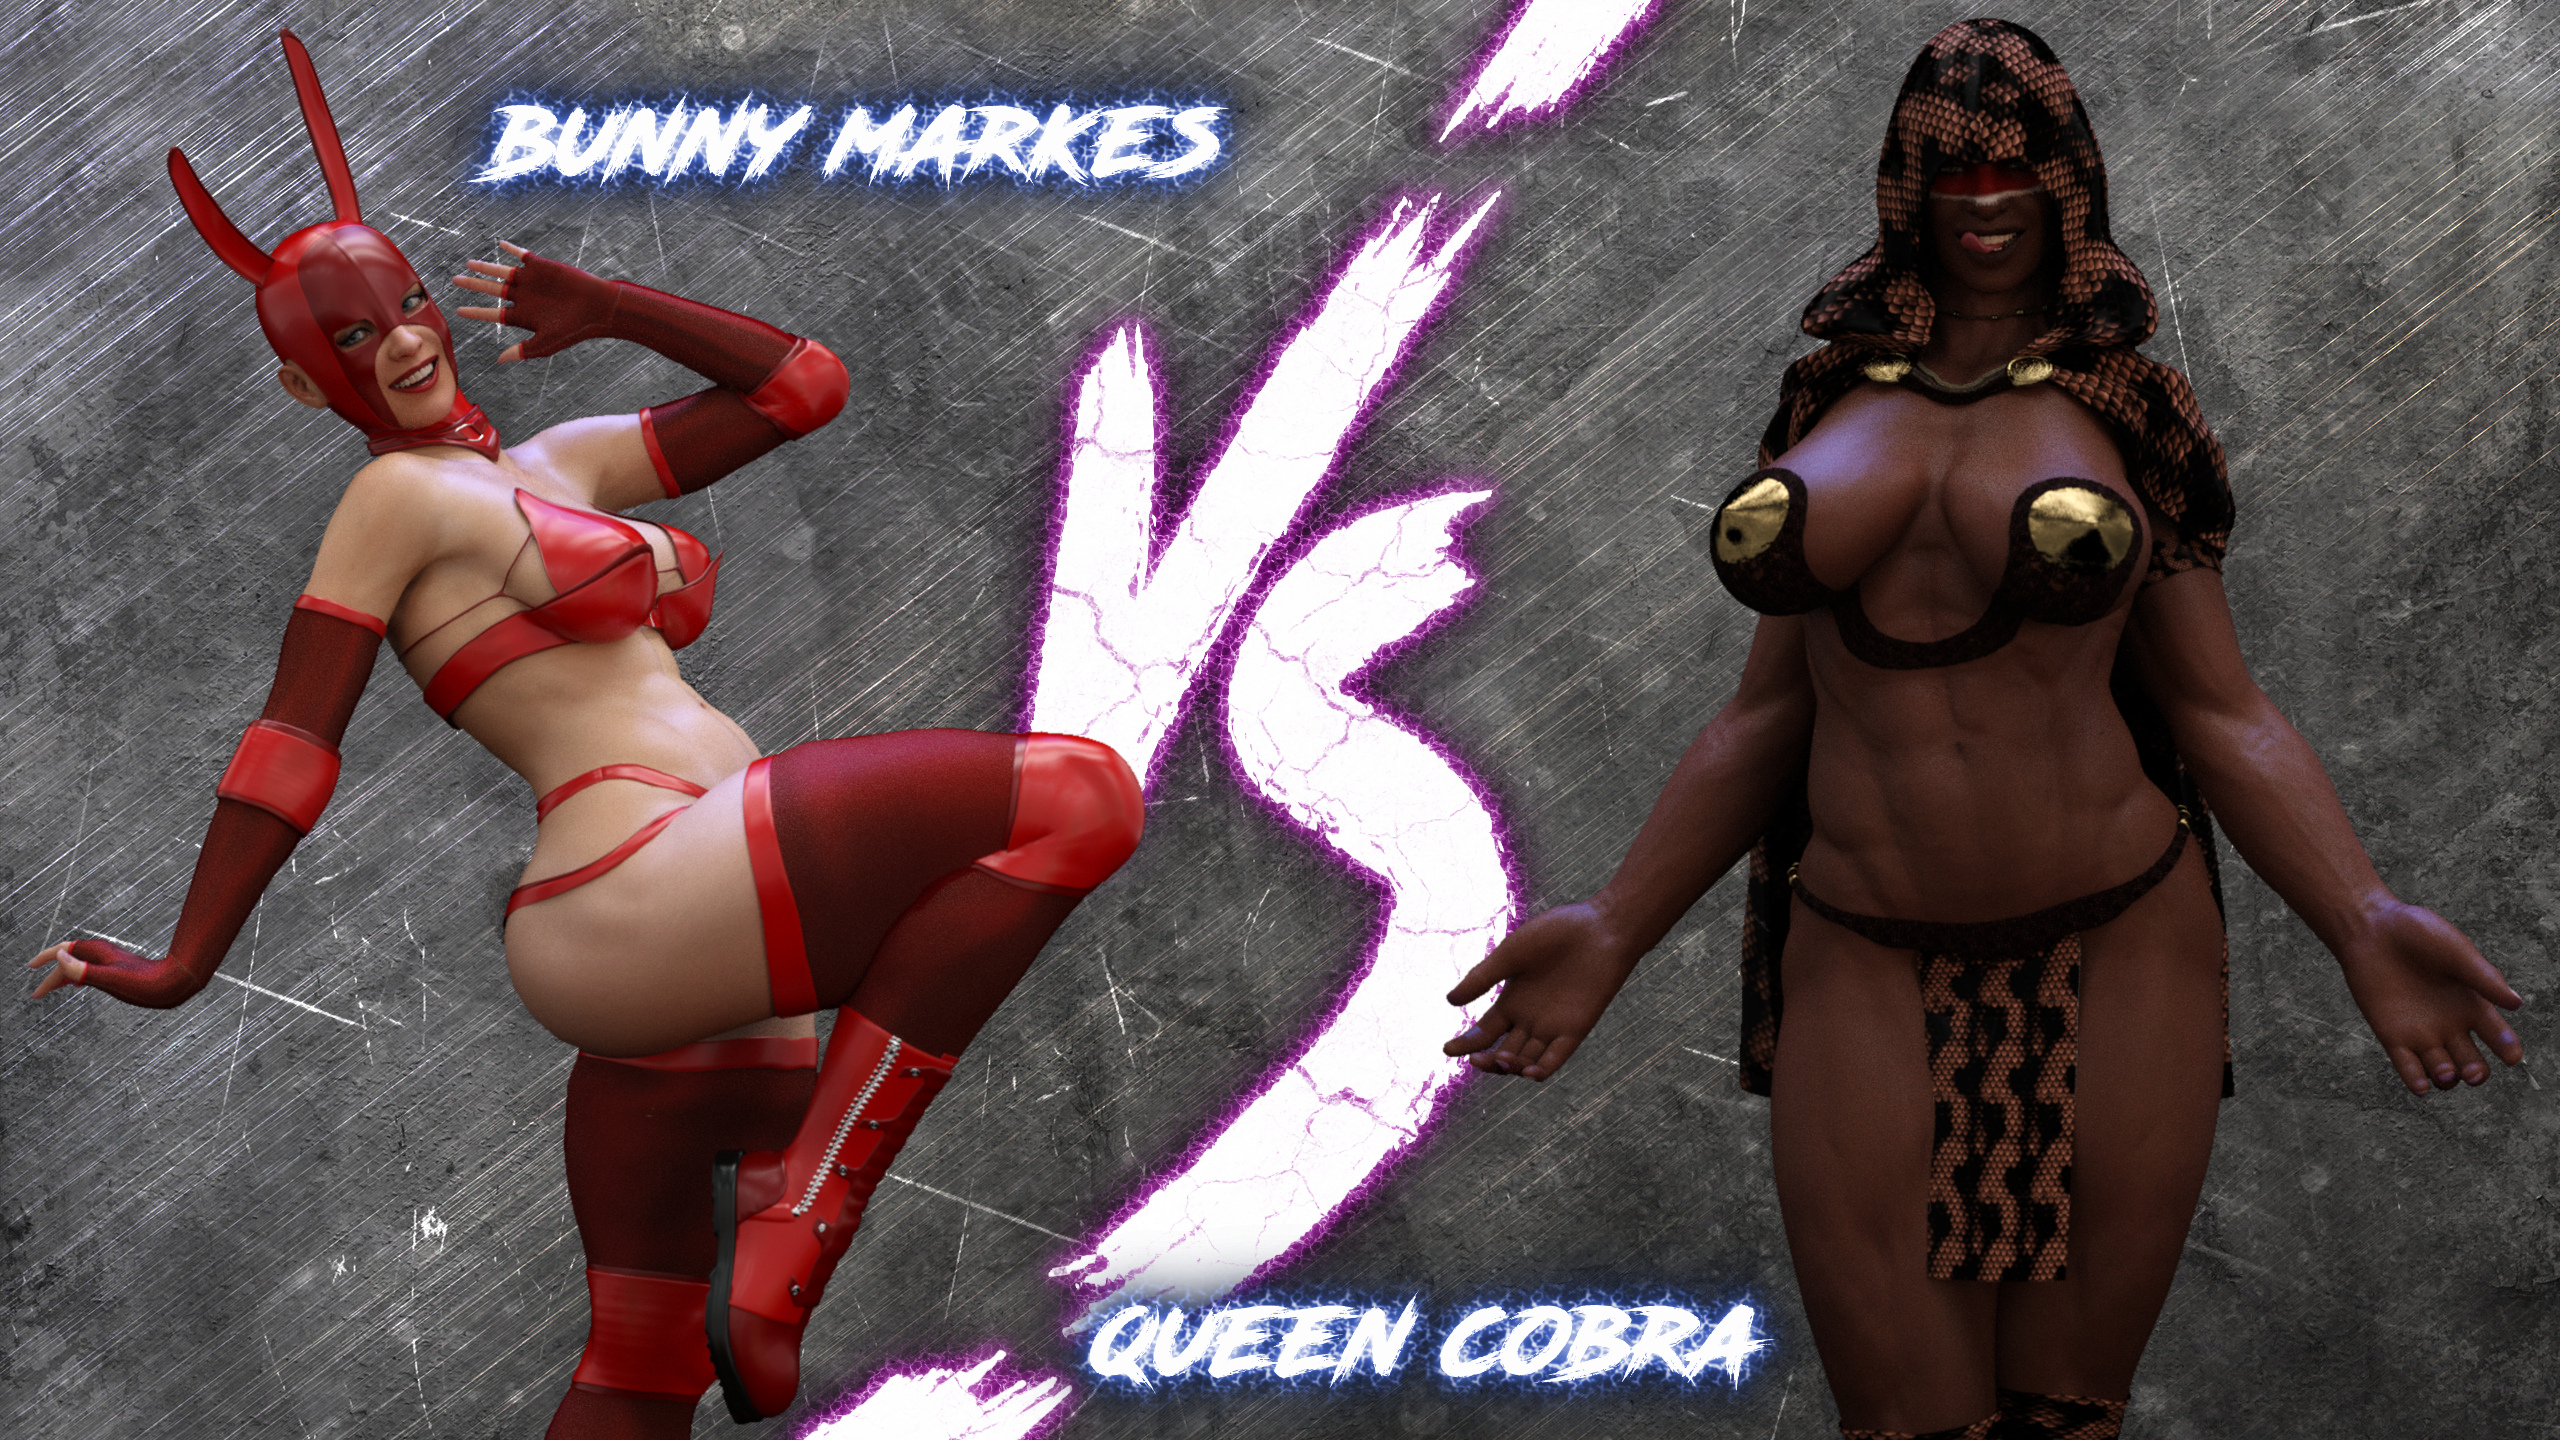 SquarePeg3D The FUTA Season 01 Match 03 Bunny Markes vs Queen Cobra 3D Porn Comic